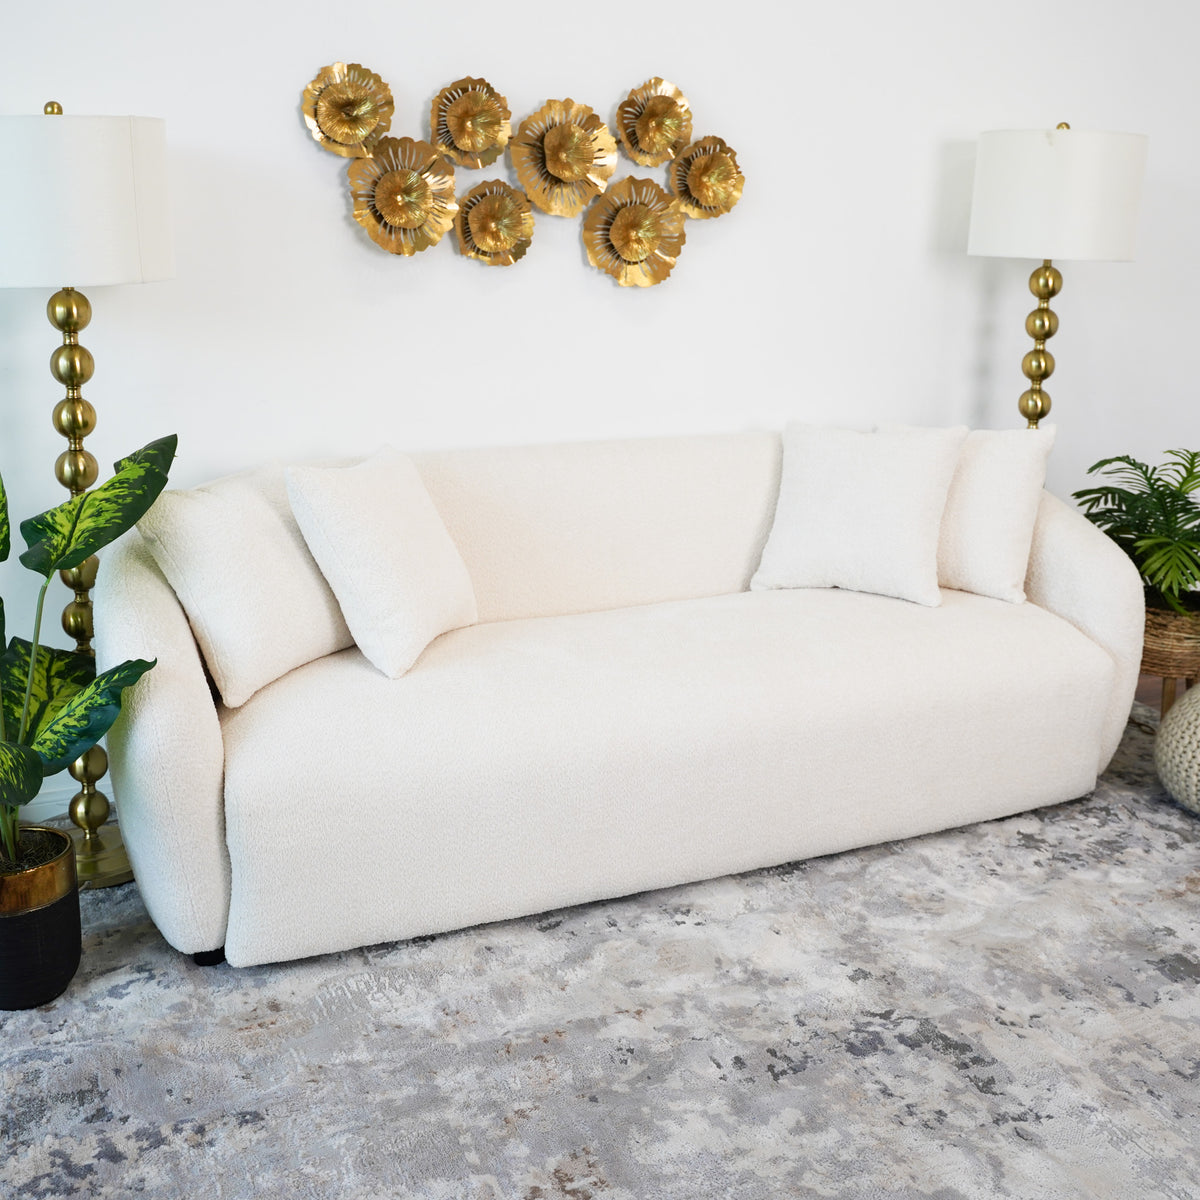 Lidia Ivory Boucle Japandi Style Sofa